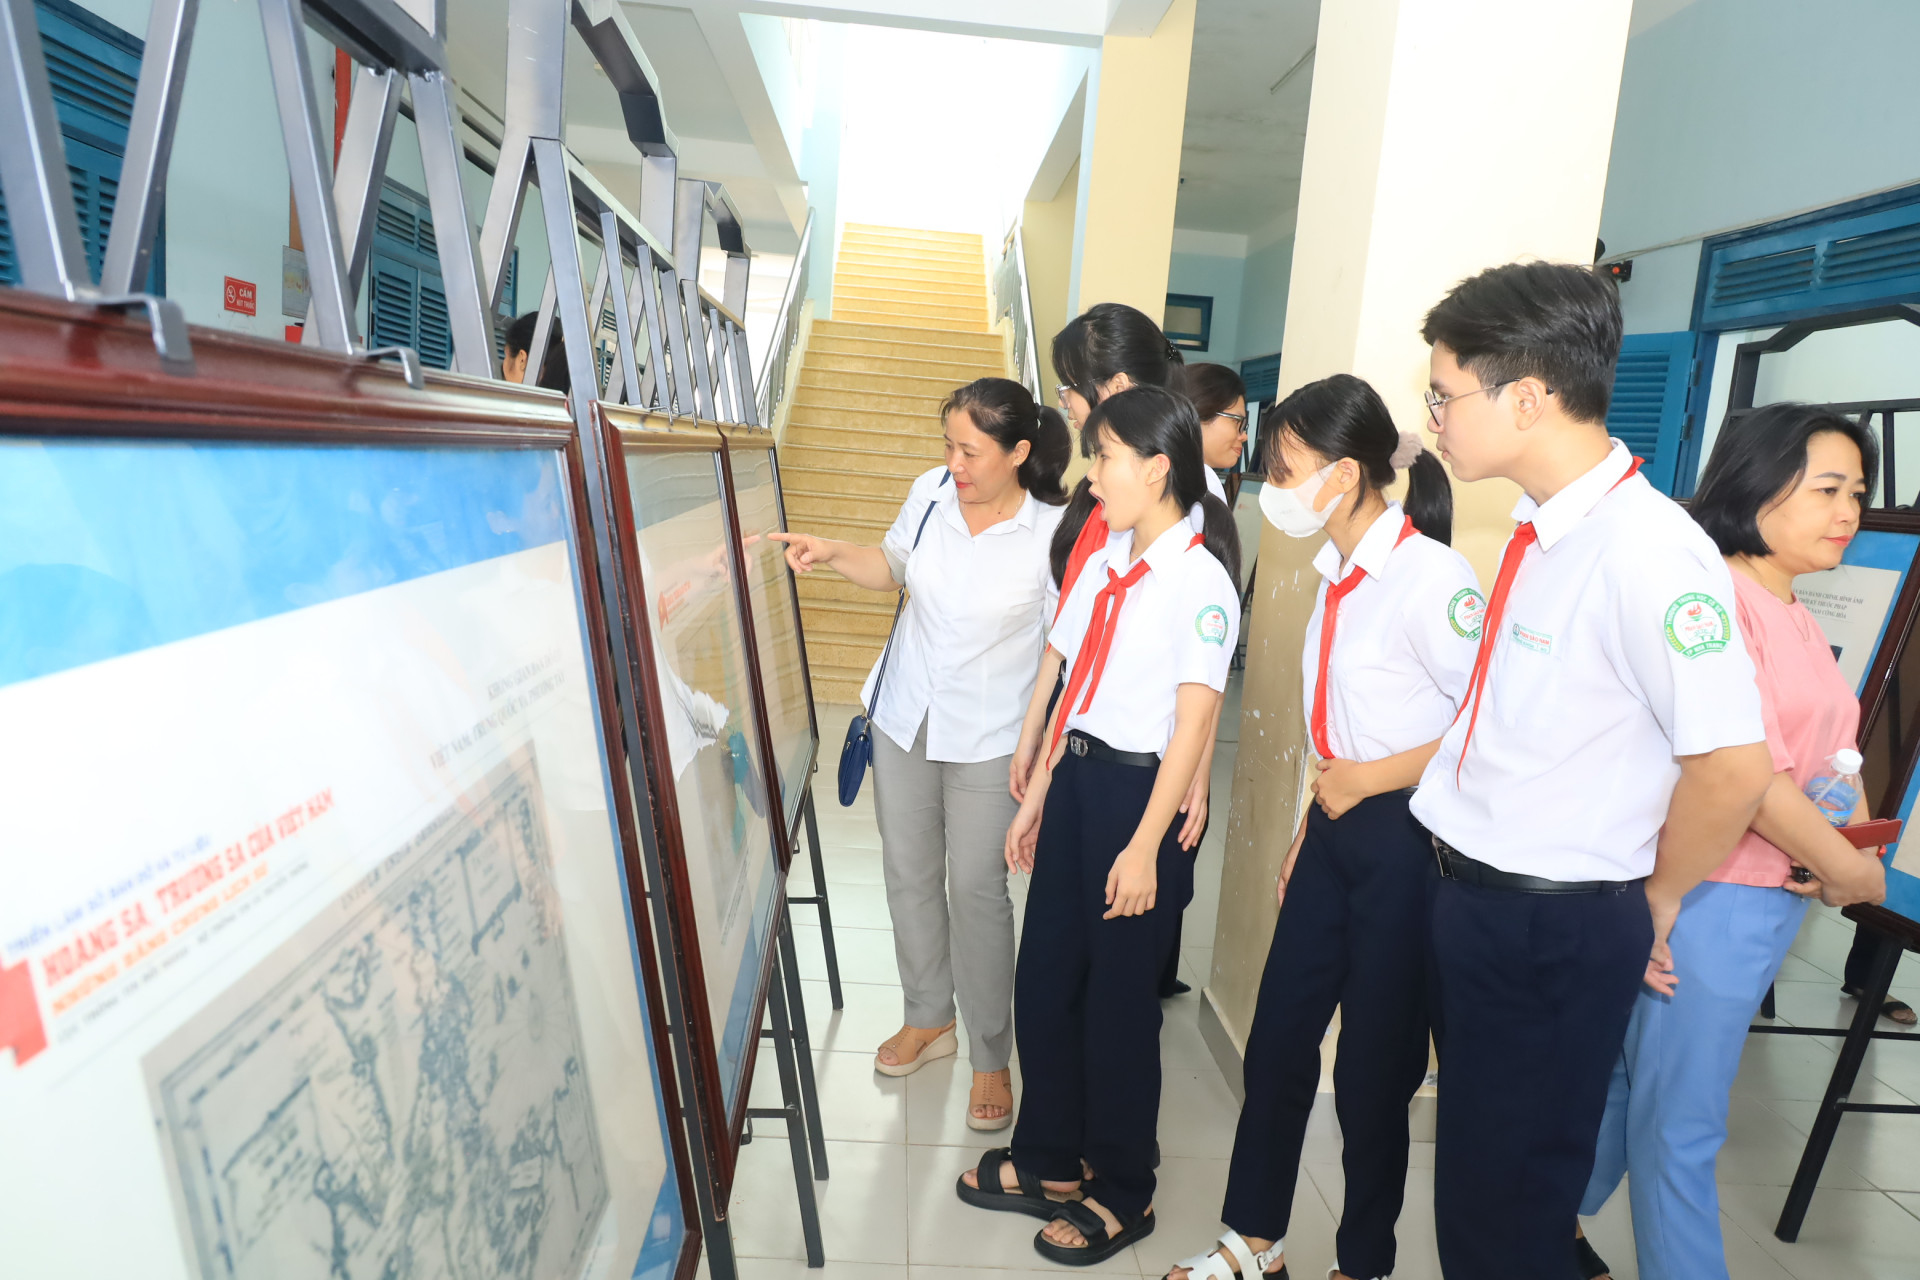 Học sinh Trường THCS Võ Văn Ký xem các bản đồ về hai quần đảo Hoàng Sa, Trường Sa được trưng bày trực tiếp trong khuôn viên trường.   

